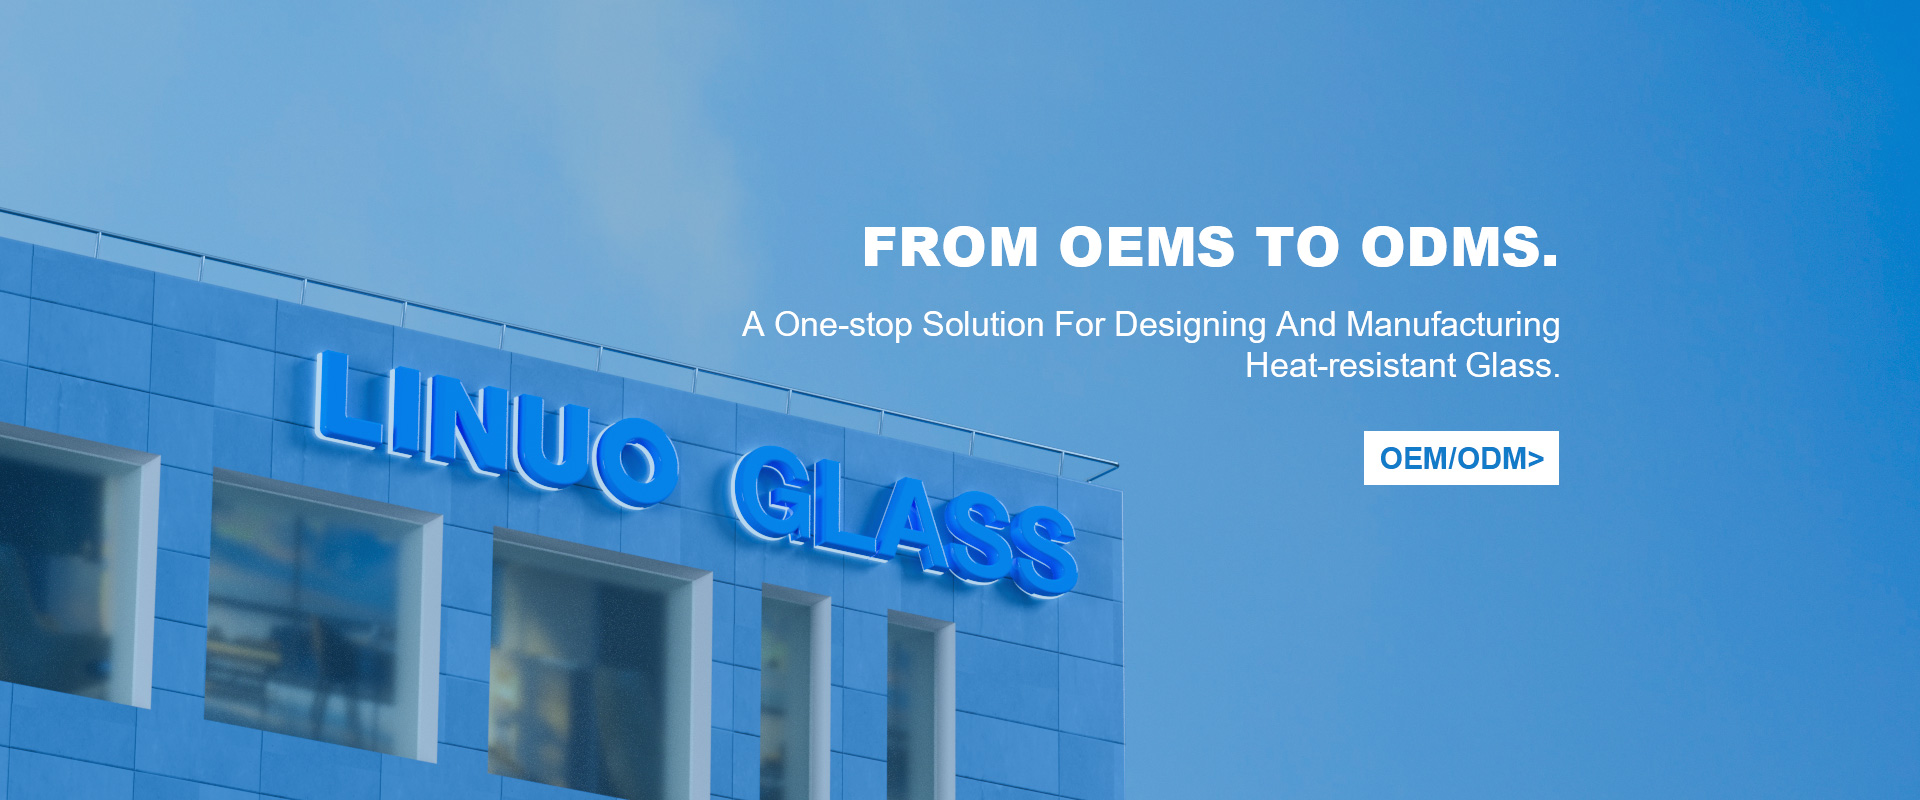 Una solución integral para el diseño y fabricación de vidrio resistente al calor.